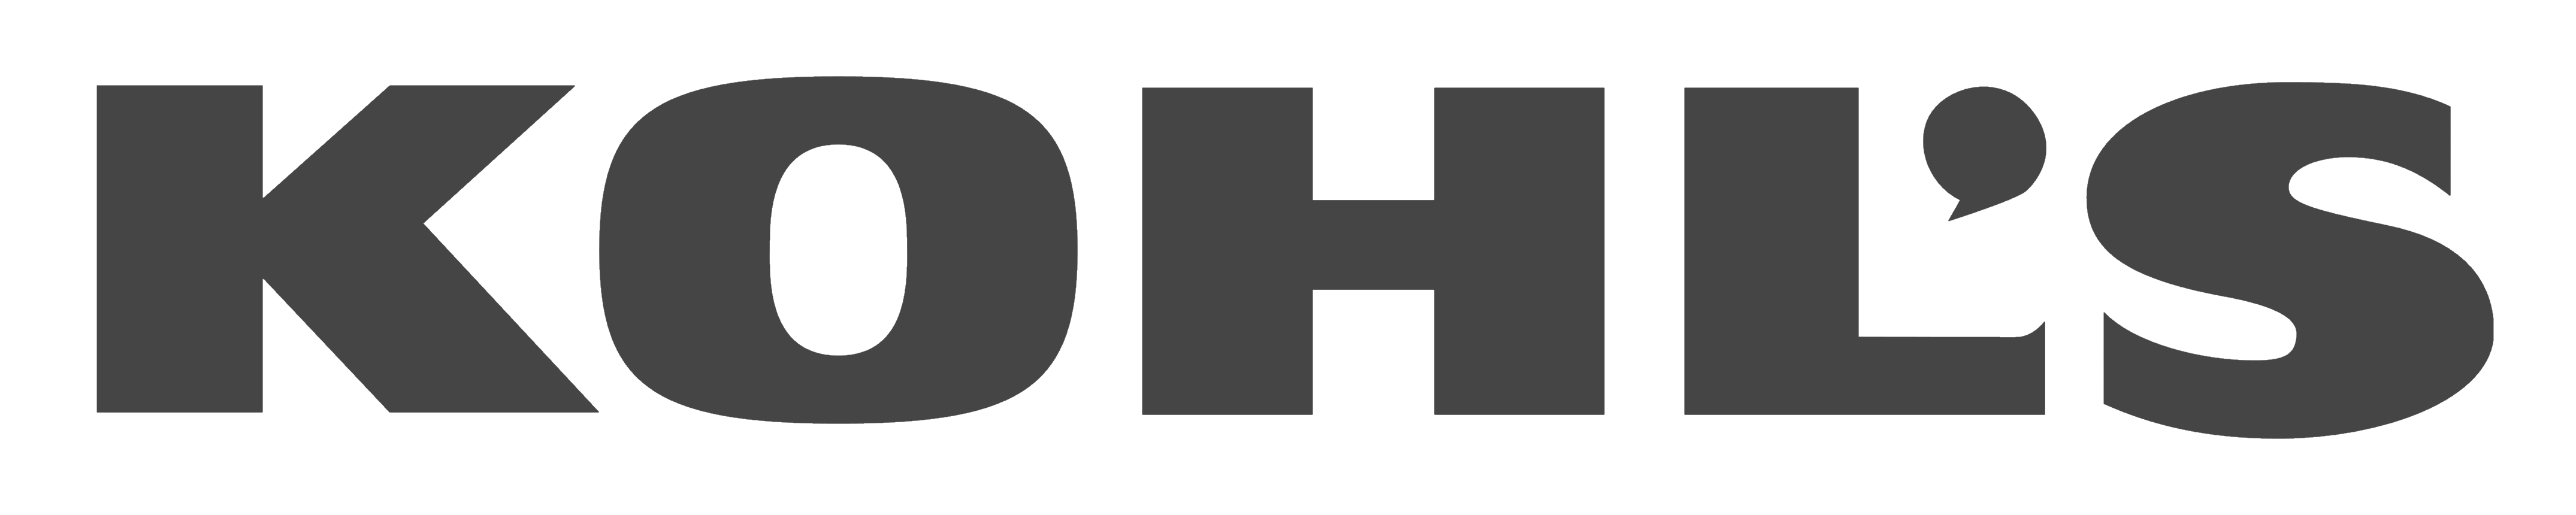 Kohl's logo, logotype